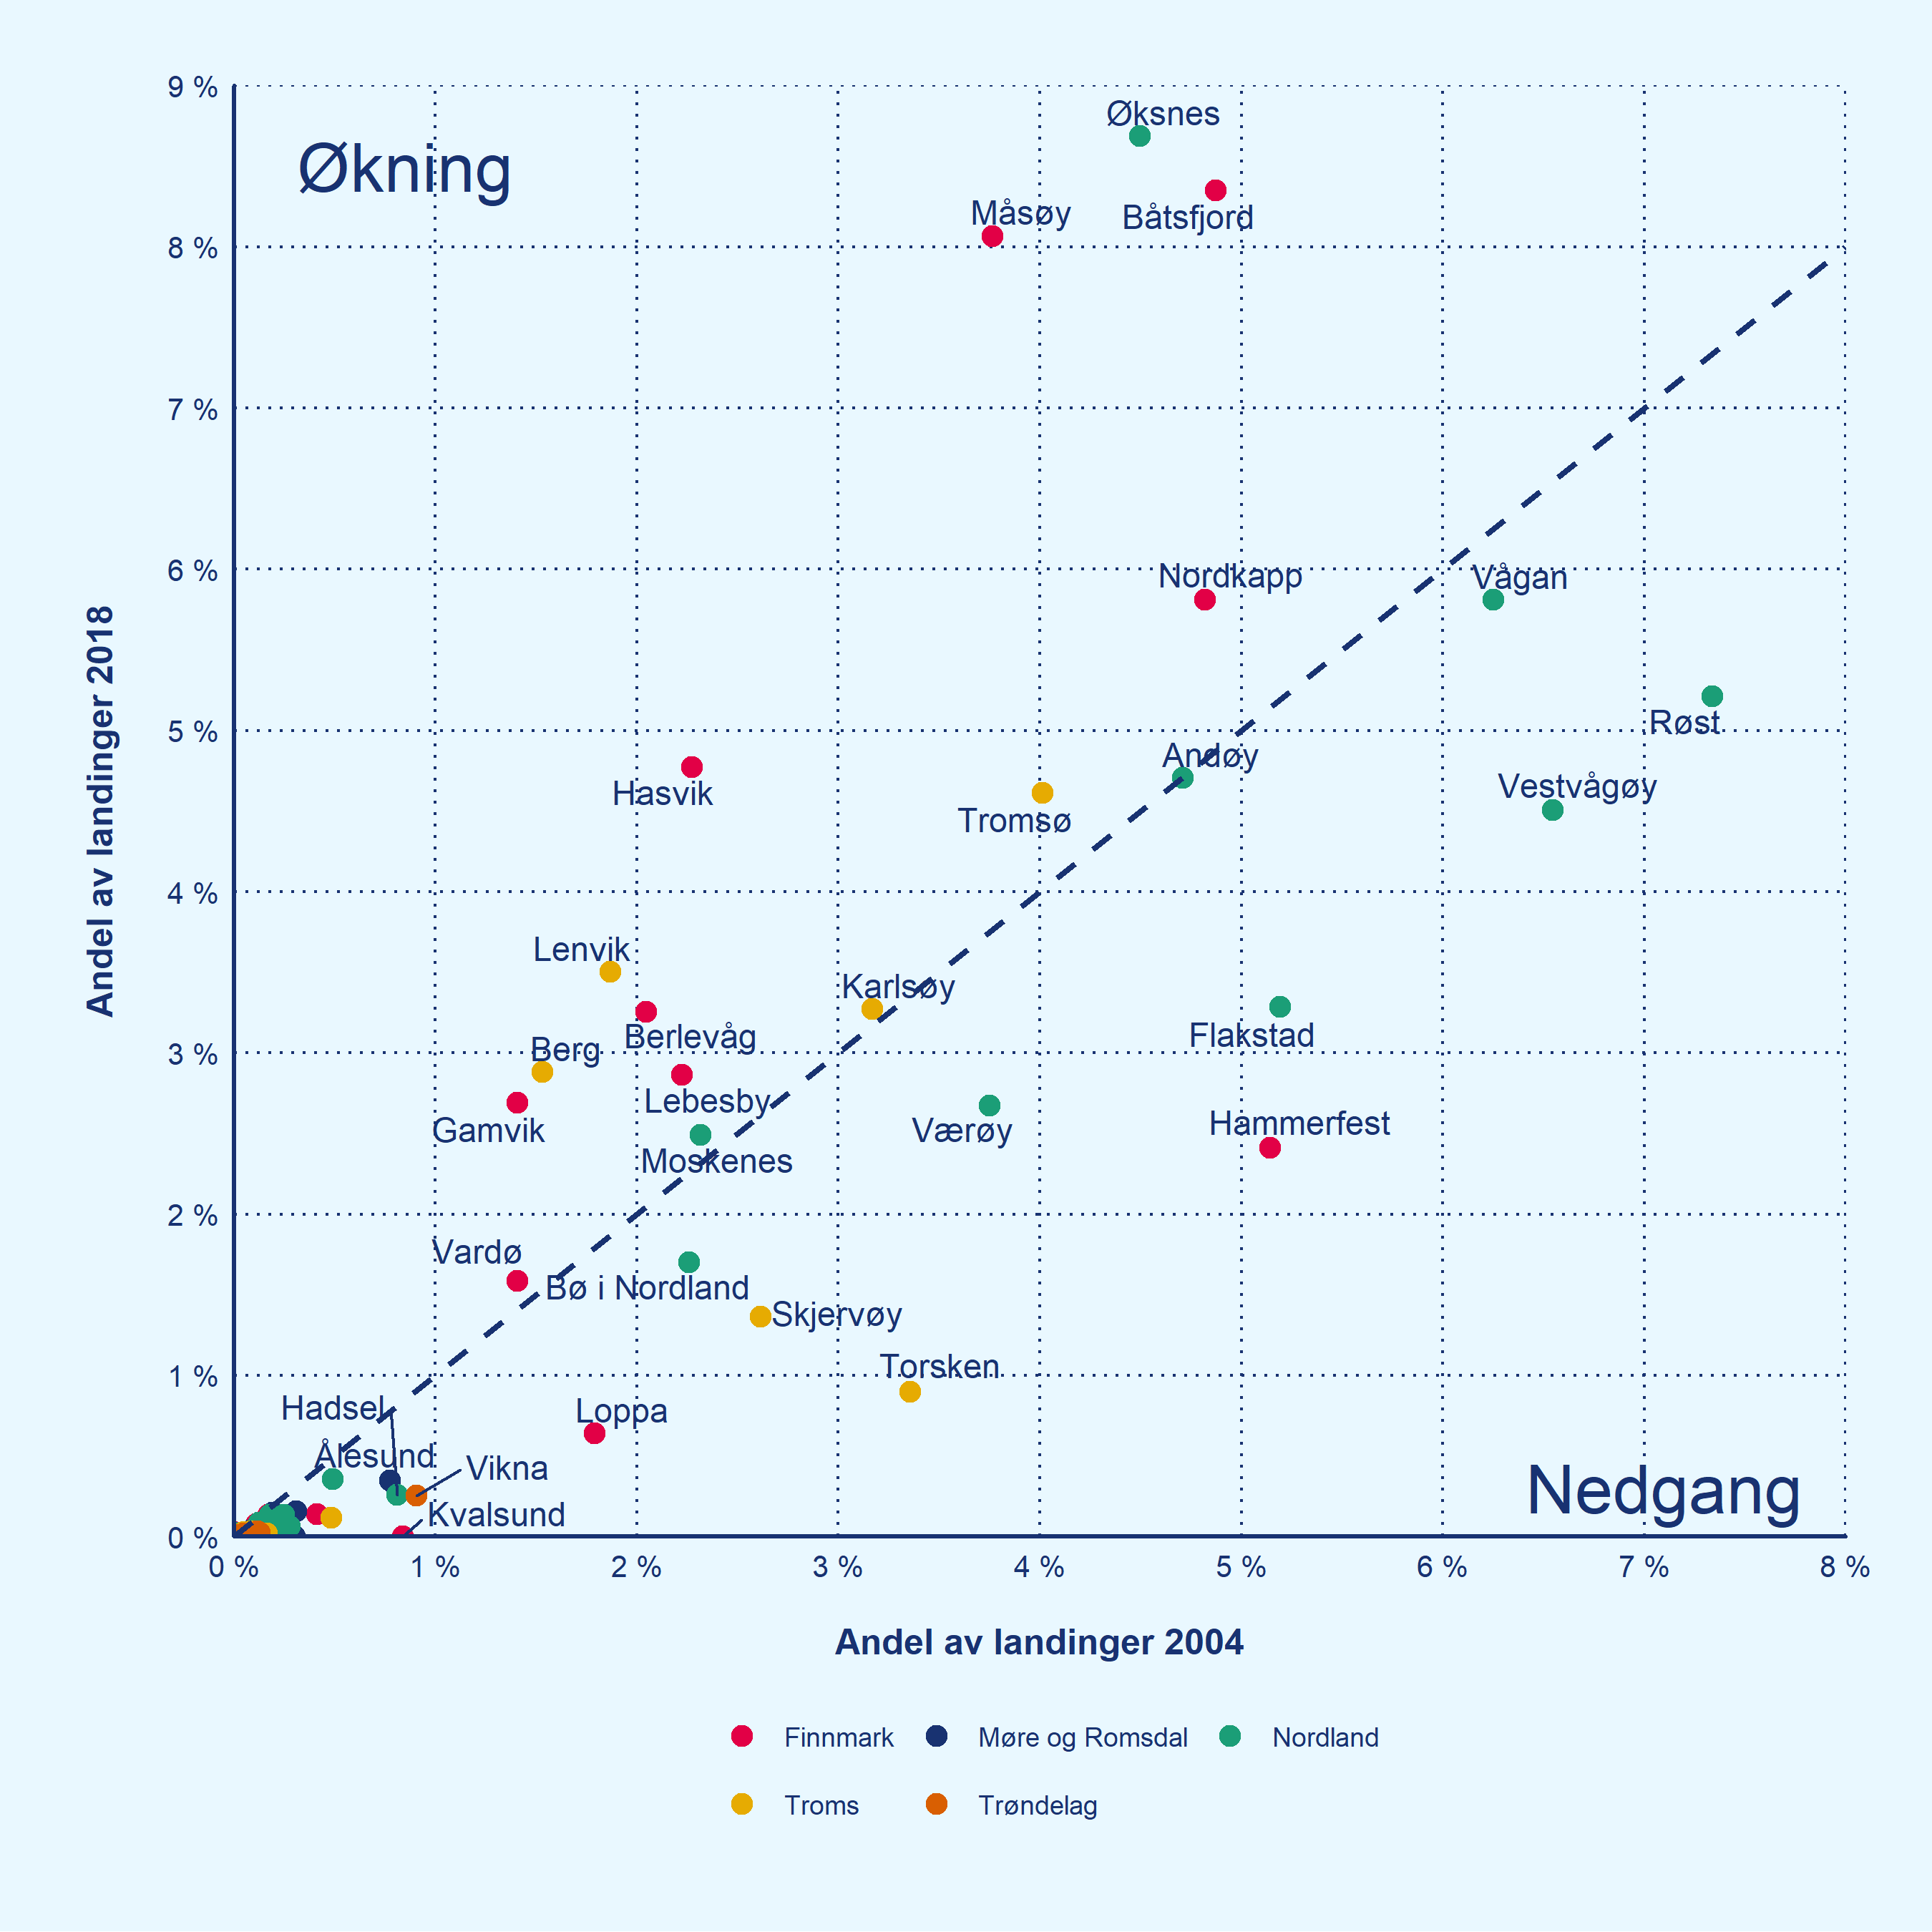 Diagram som viser endringer i andel av landinger av fersk torsk i utvalgte kommuner og fylker fra 2004 til 2018.